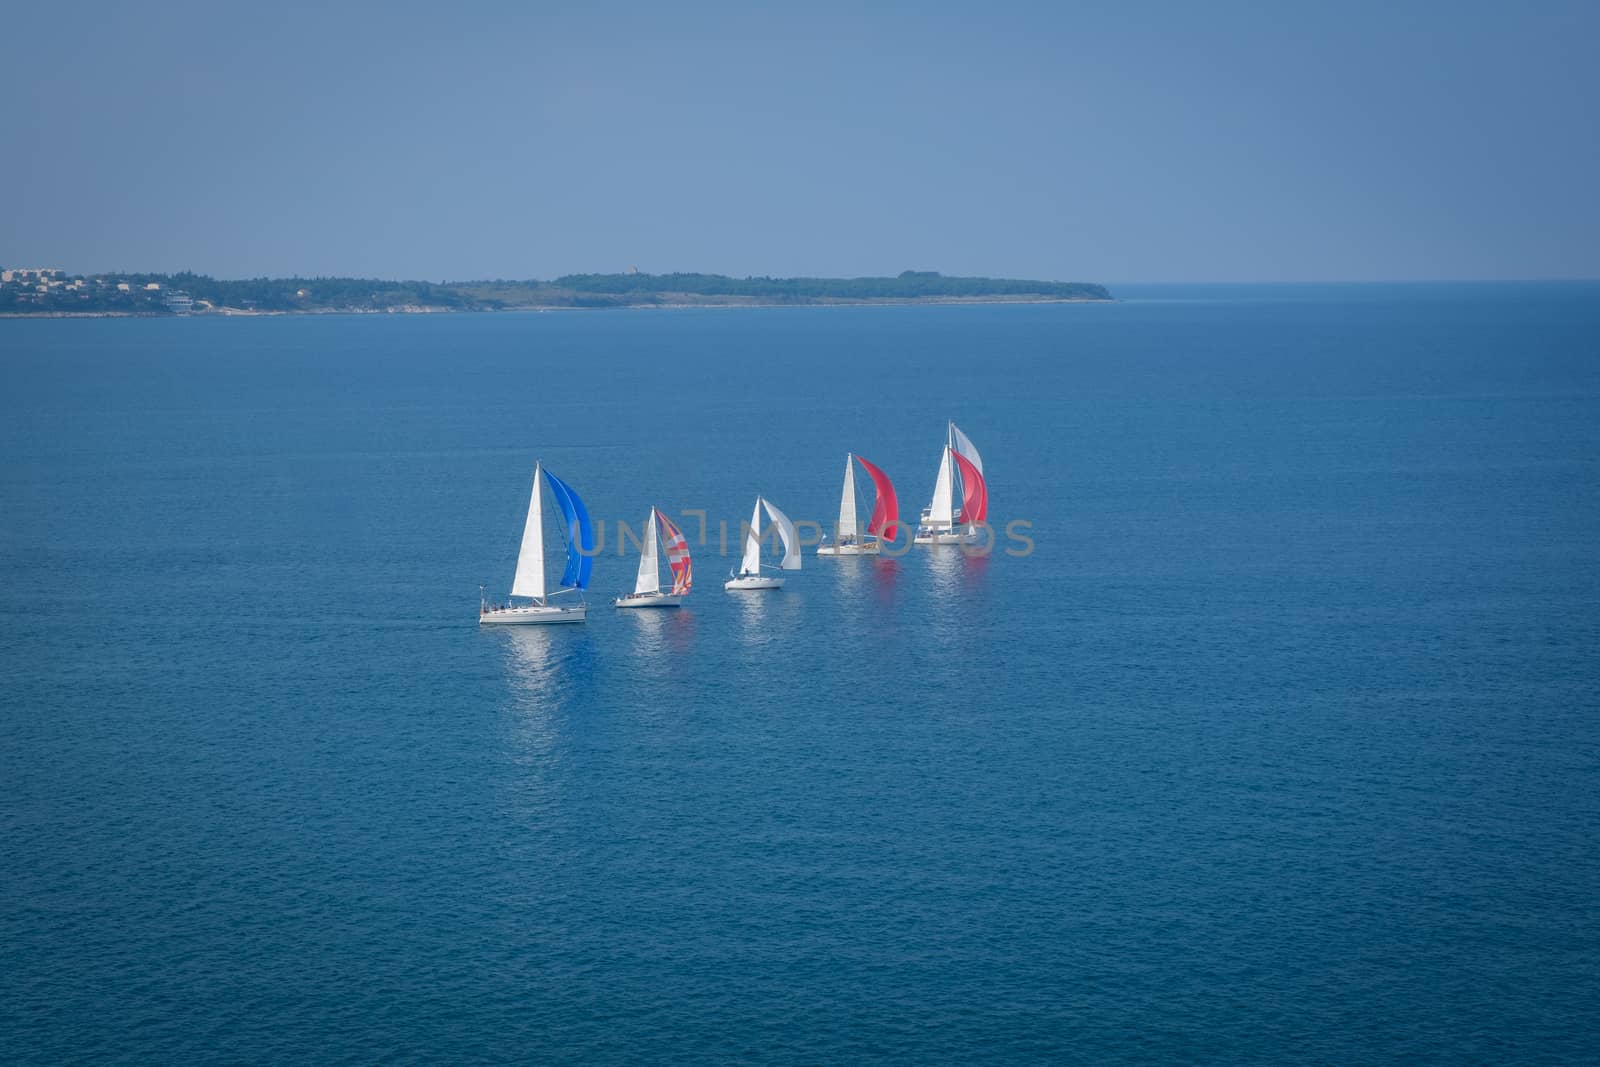 Sailing boats line up and compete in regatta off coast in Portoroz, Slovenia